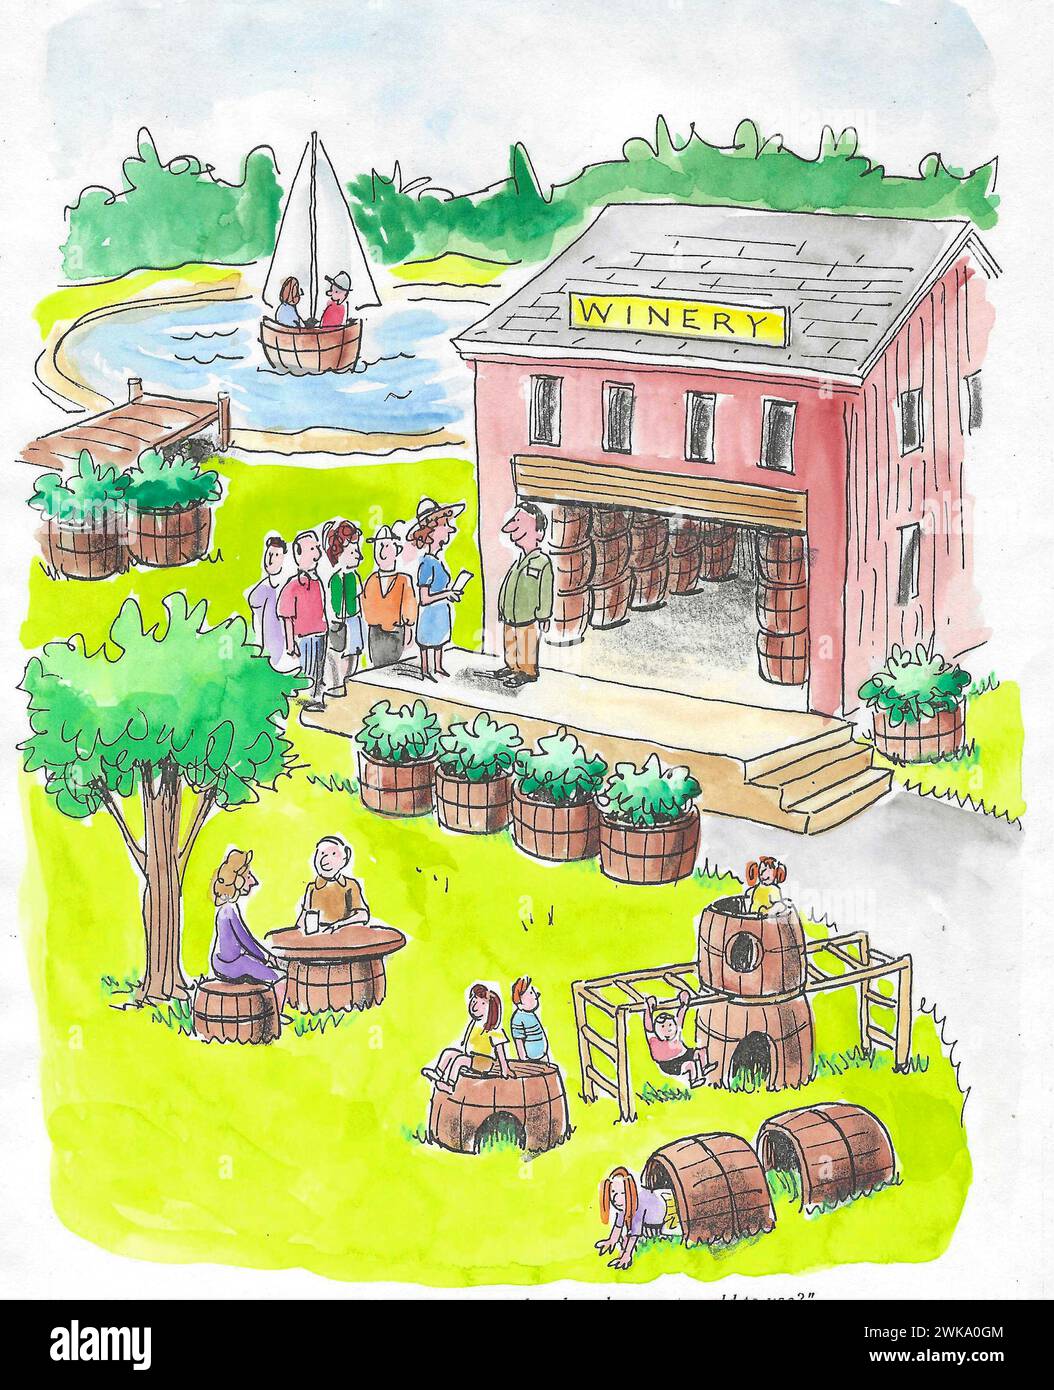 Farbcartoon eines Weinguts, das viele Verwendungen für ihre leeren Weinfässer geschaffen hat - Pflanzenhalter, Segelboot, Spielzeug für Kinder, Sitze und vieles mehr. Stockfoto